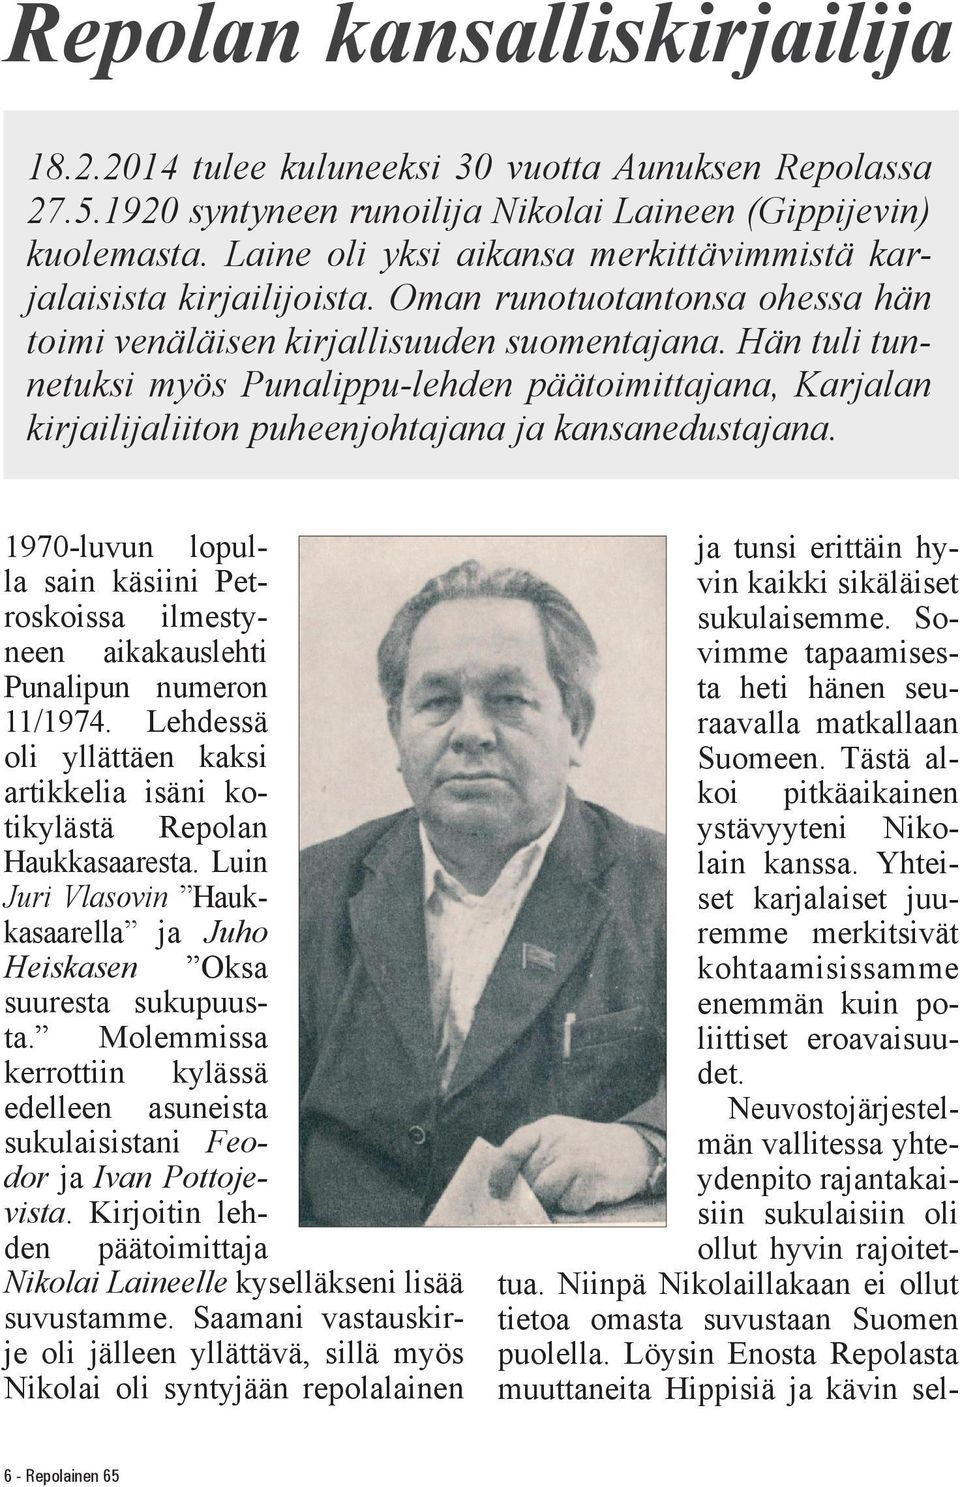 Hän tuli tunnetuksi myös Punalippu-lehden päätoimittajana, Karjalan kirjailijaliiton puheenjohtajana ja kansanedustajana.